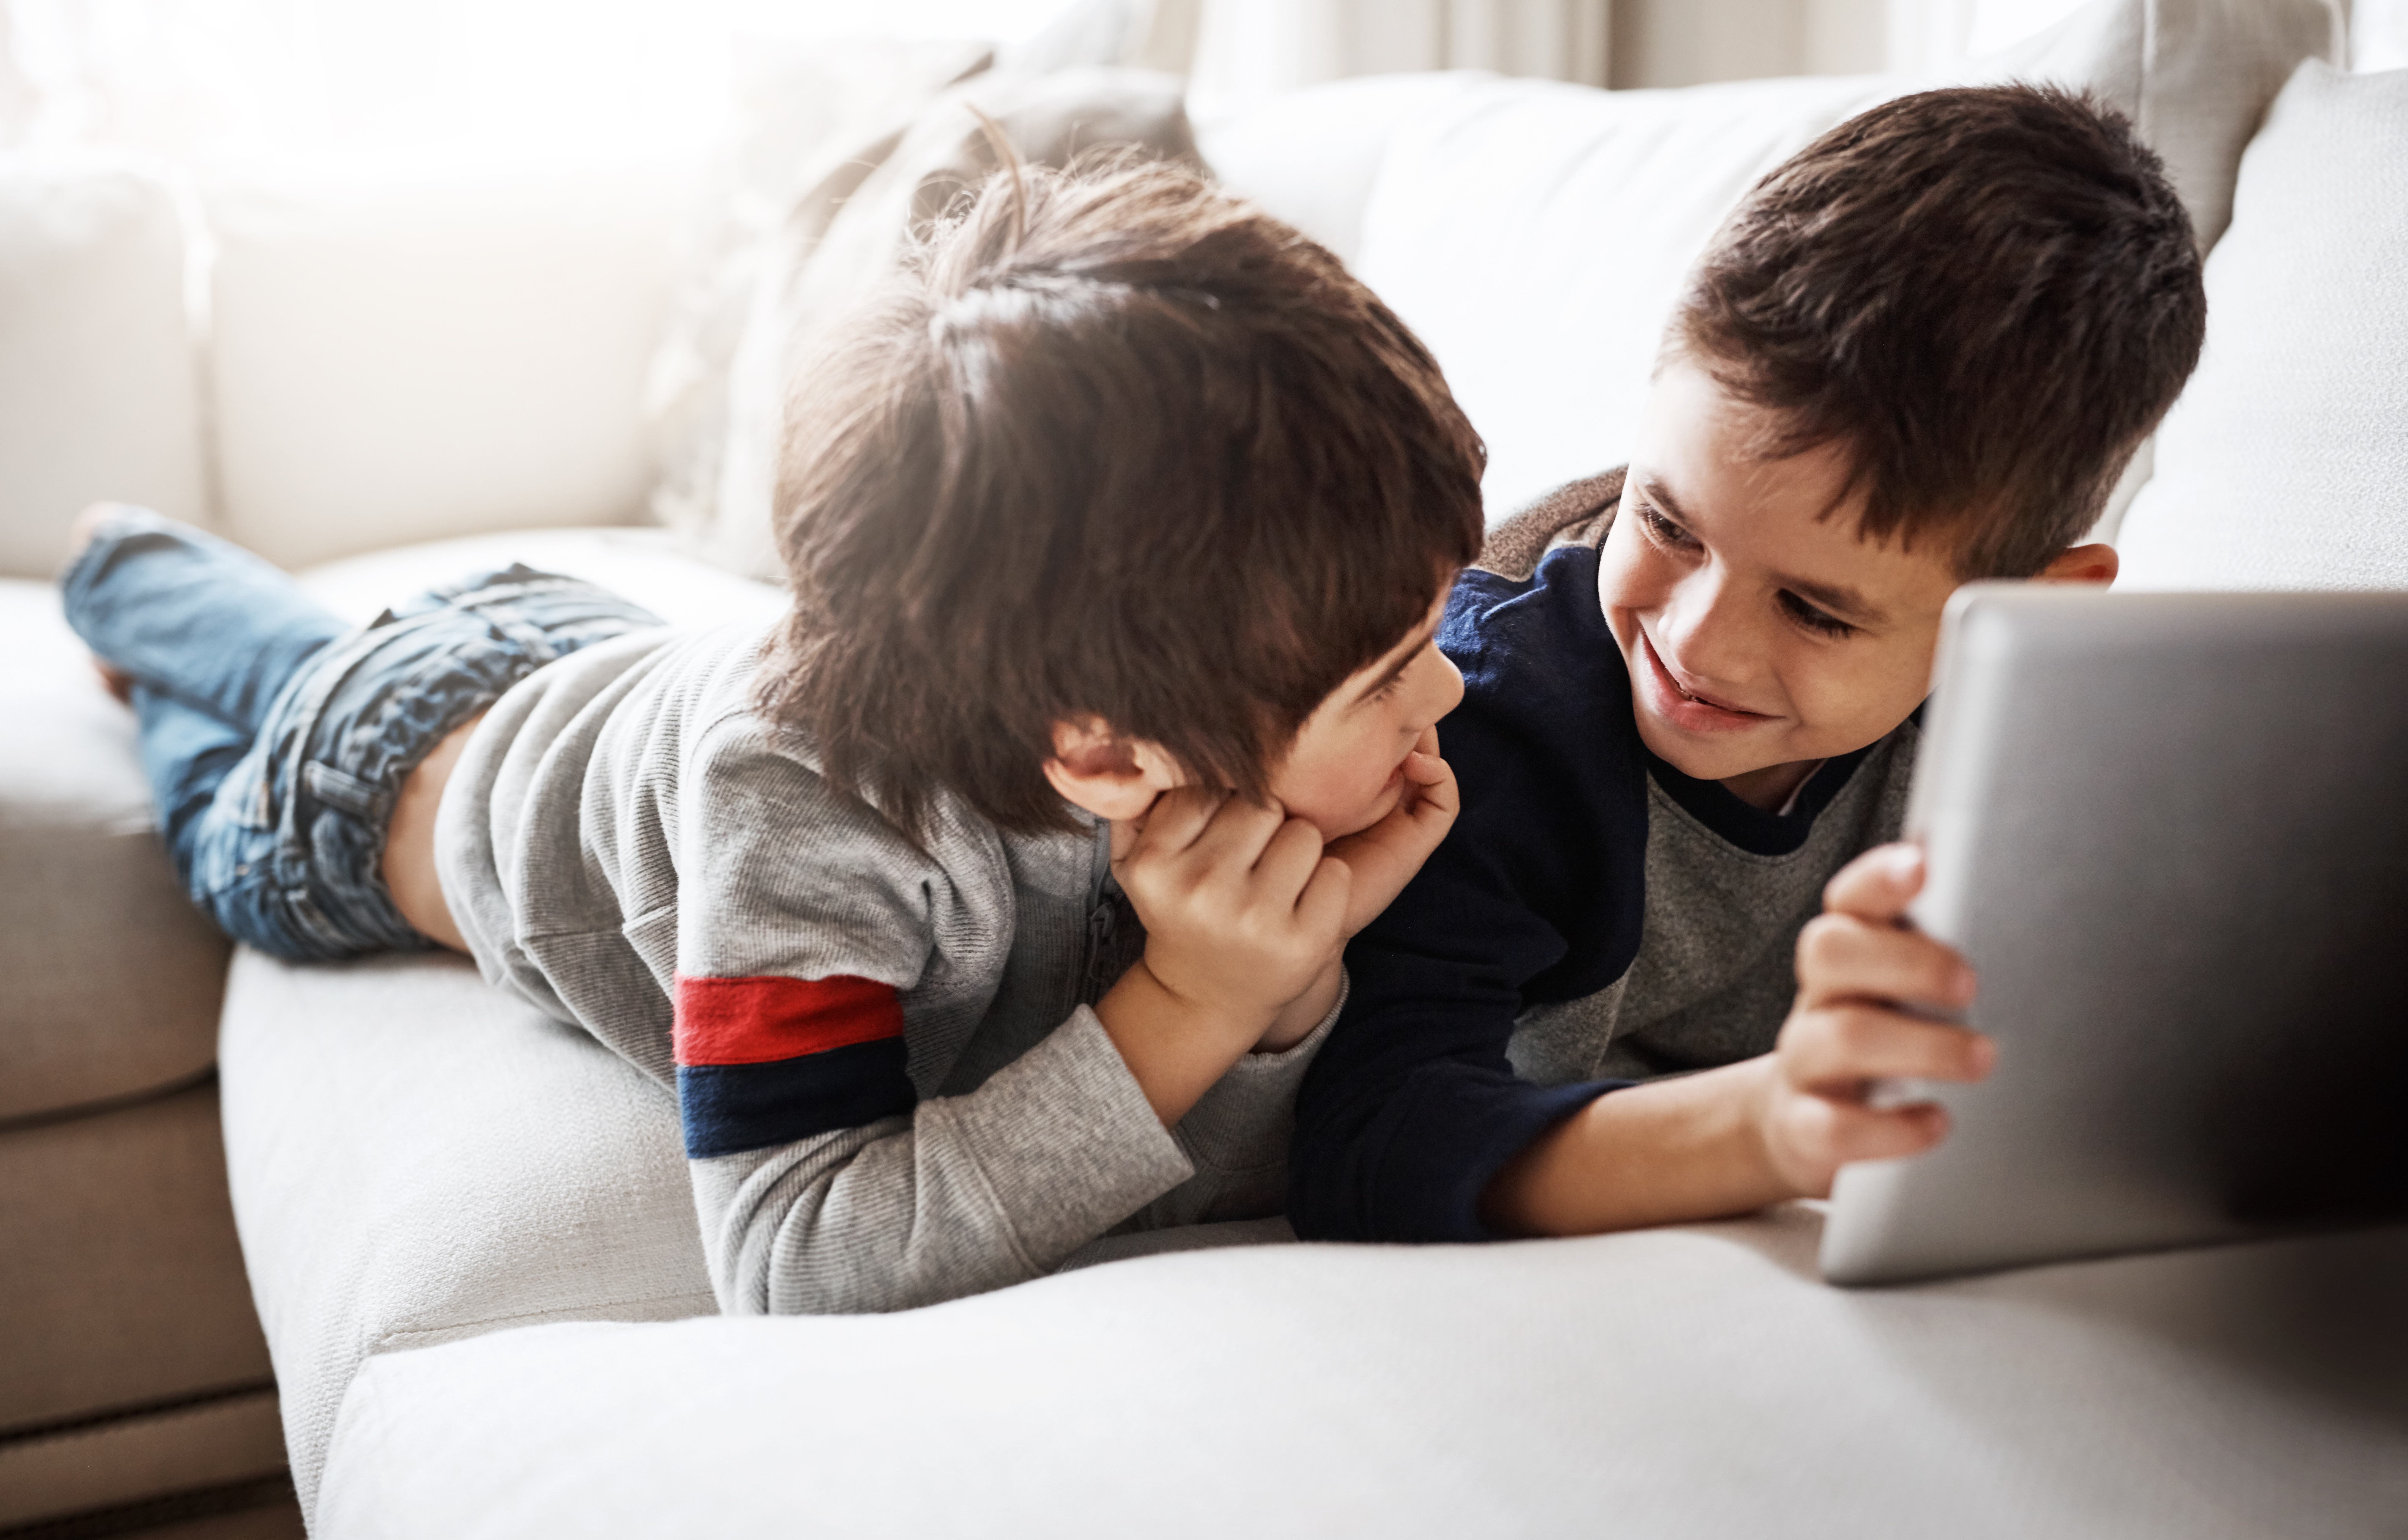 Zwei junge Kinder liegen nebeneinander auf dem Sofa auf dem Bauch liegen und nutzen gemeinsam ein Tablet. Sie lachen sich an.